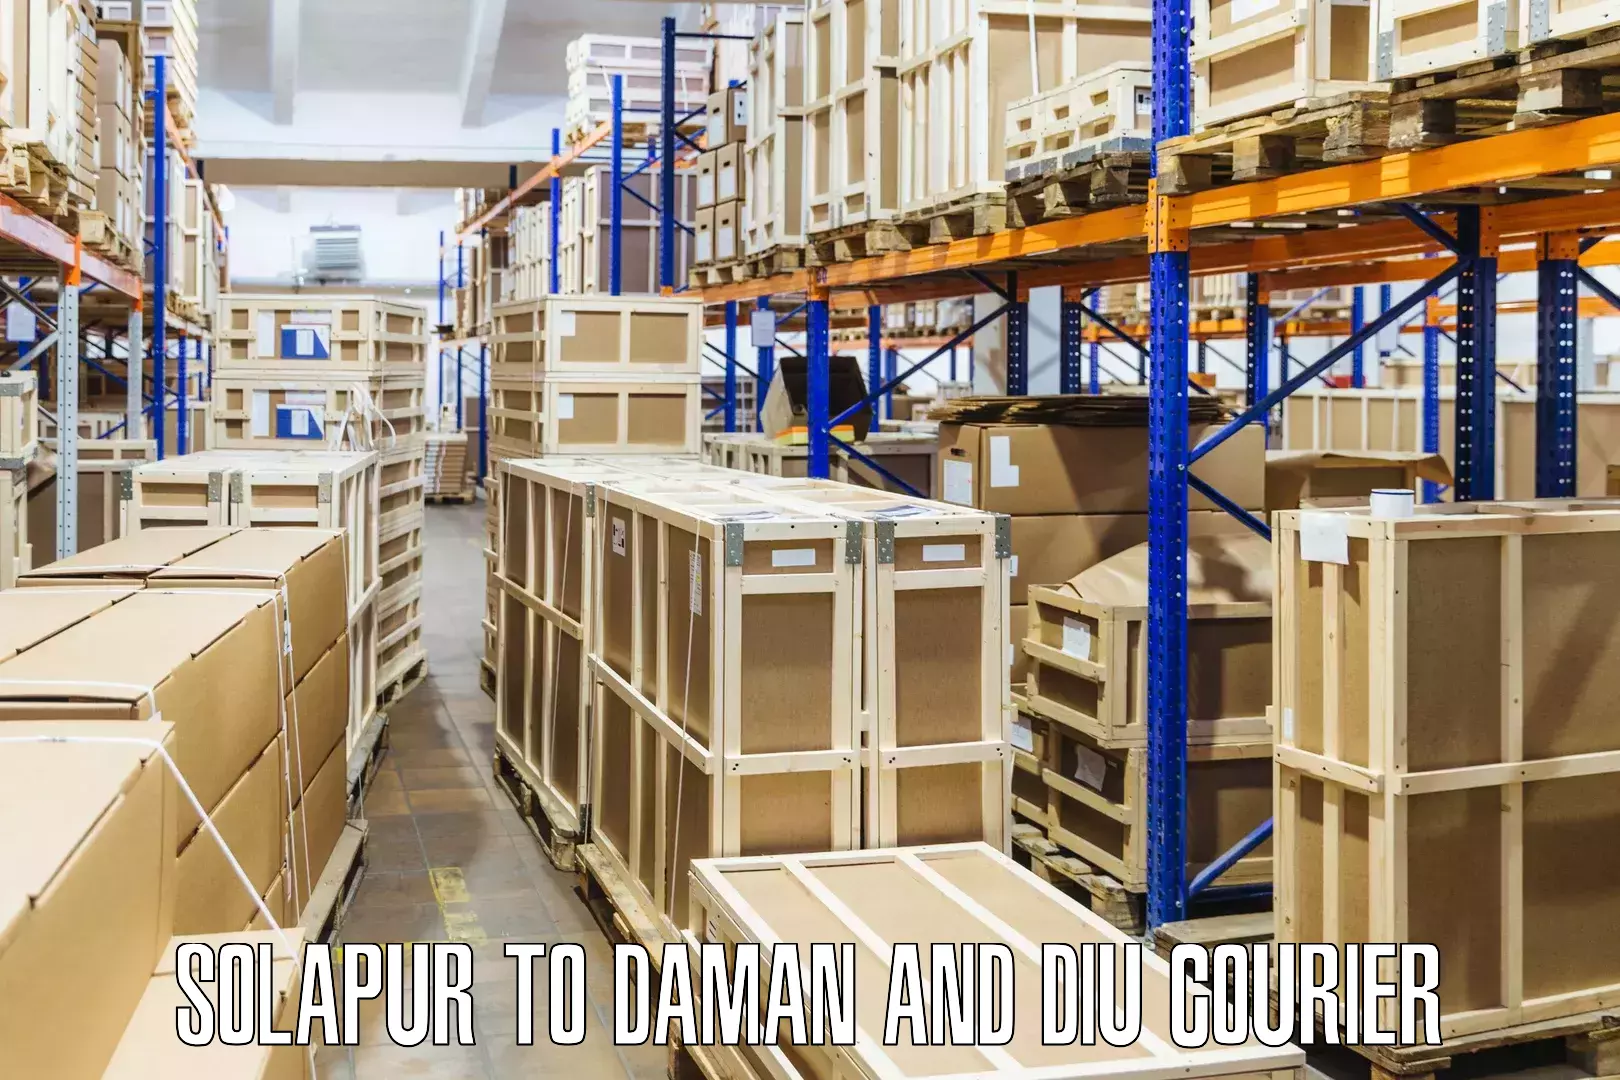 Flexible parcel services Solapur to Daman